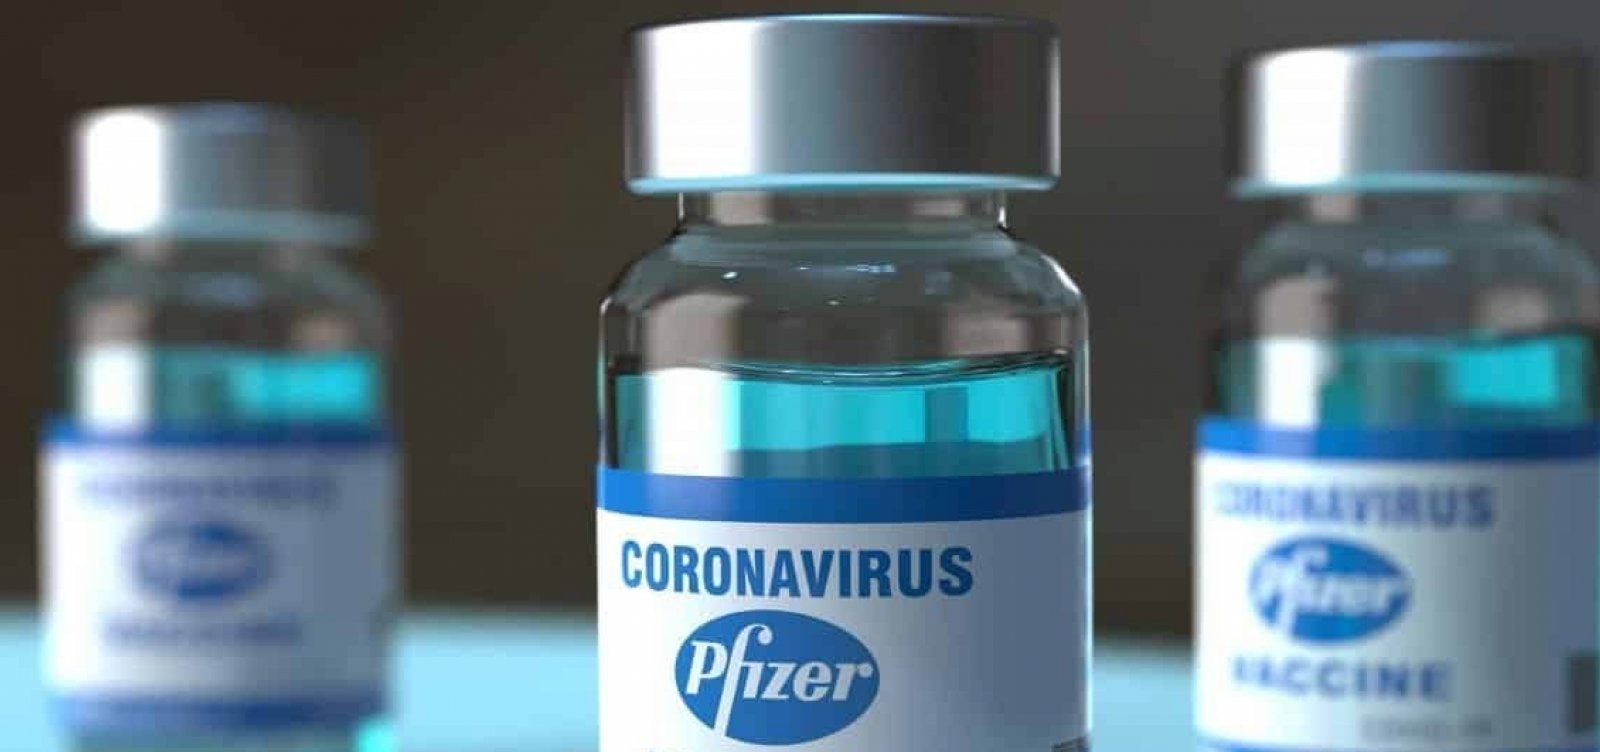 [Pfizer propõe entregar 100 milhões de doses da vacina contra Covid-19 ao Brasil, diz CNN ]